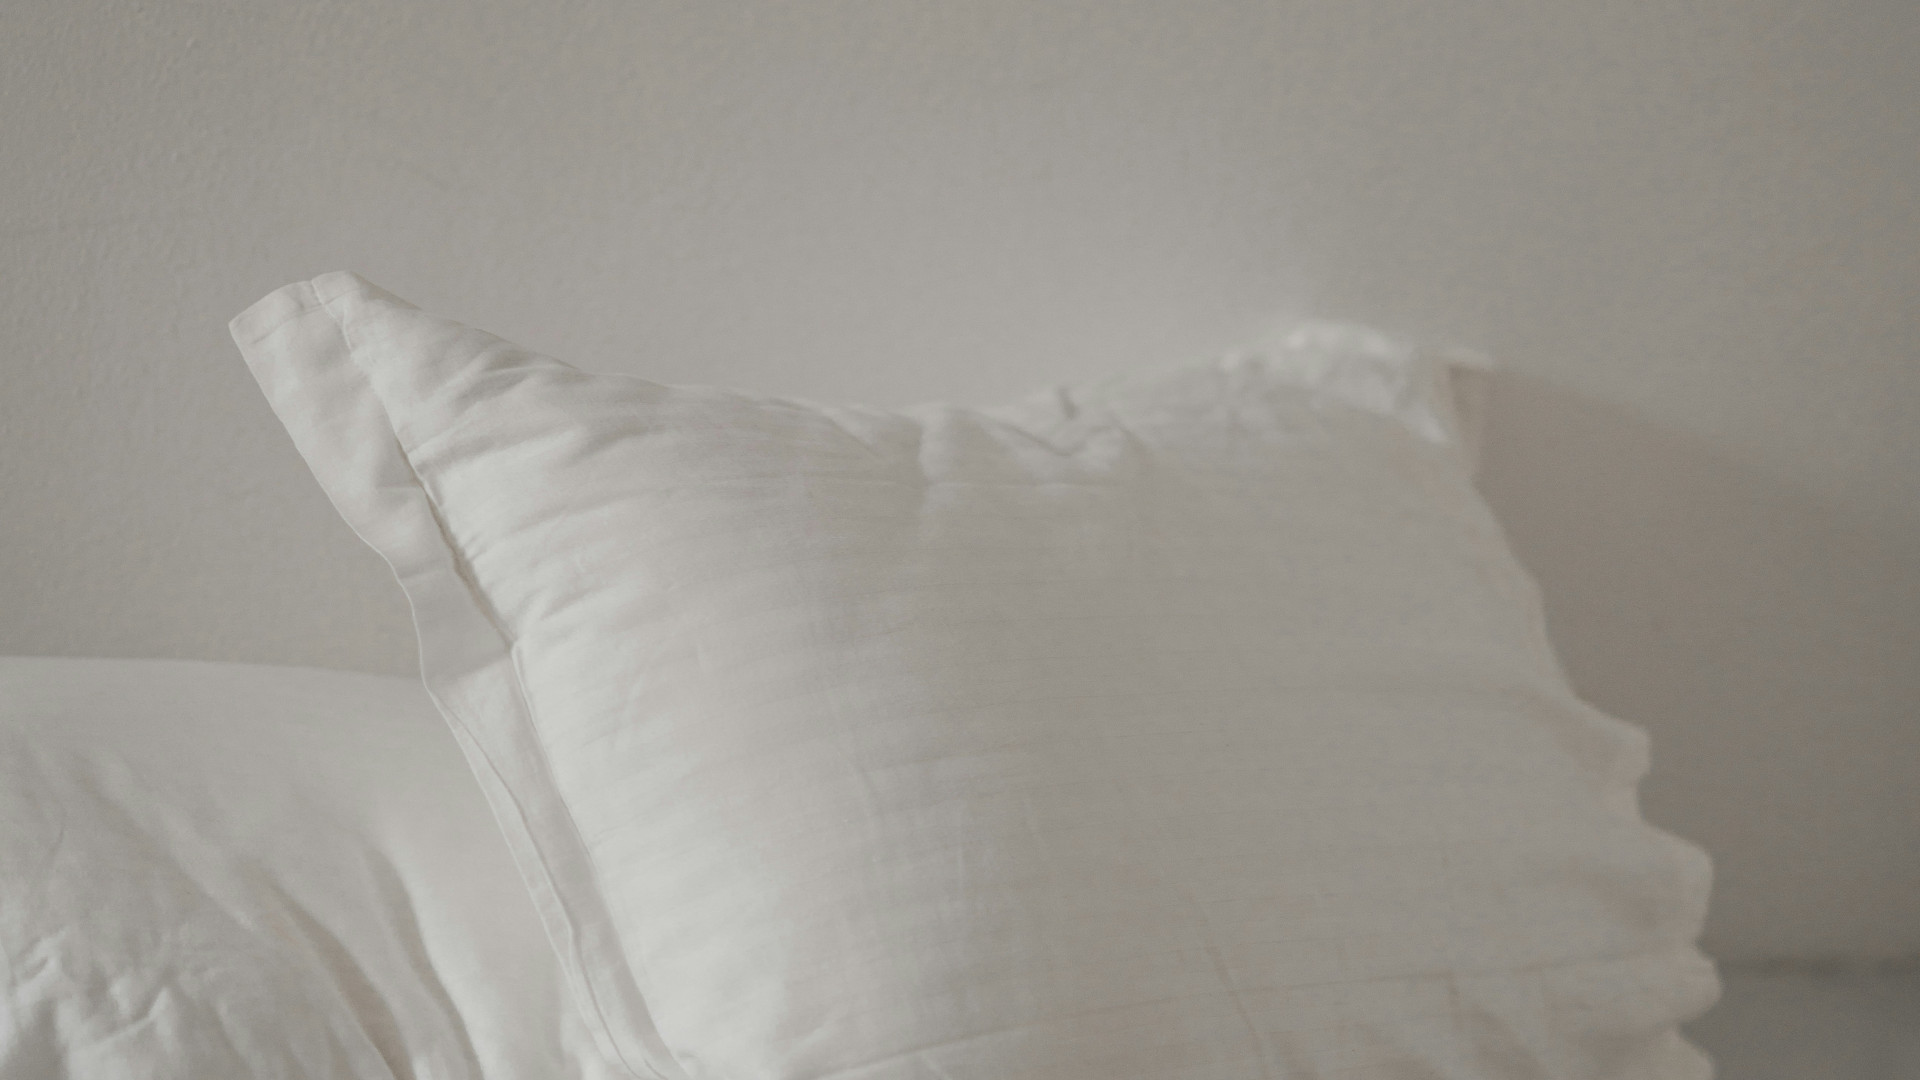 Désinsectisation efficace des punaises de lit à Maisons-Alfort : comment s'y prendre ?